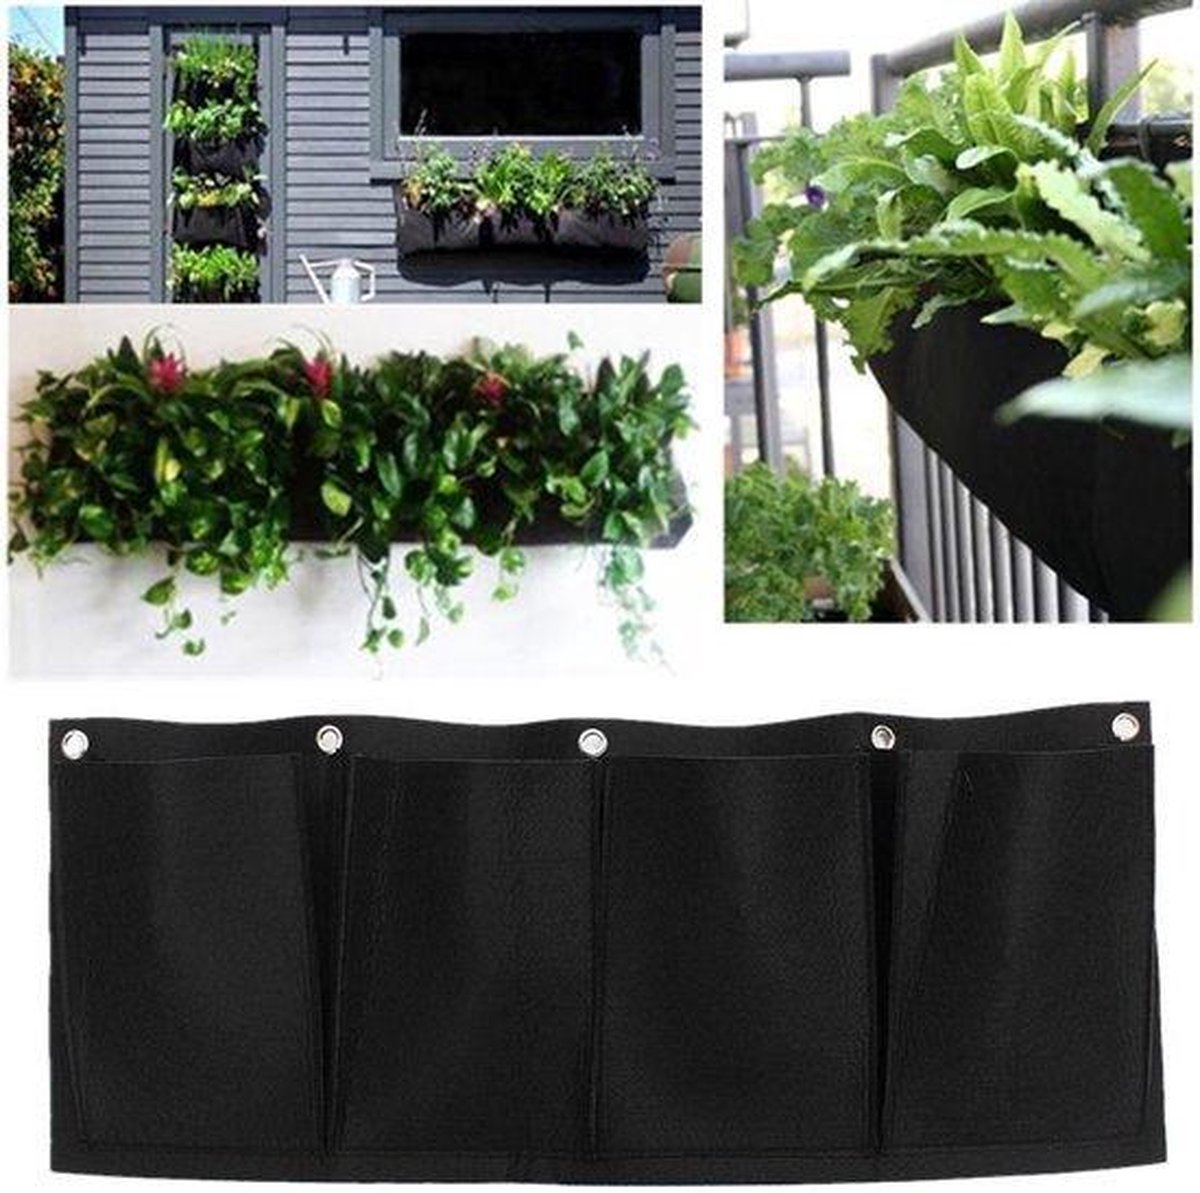 Jardinière,Sac de Jardin mural suspendu pour plantes et légumes,poches  verticales de jardinage,sac de - BLACK -XL 100 x 100cm